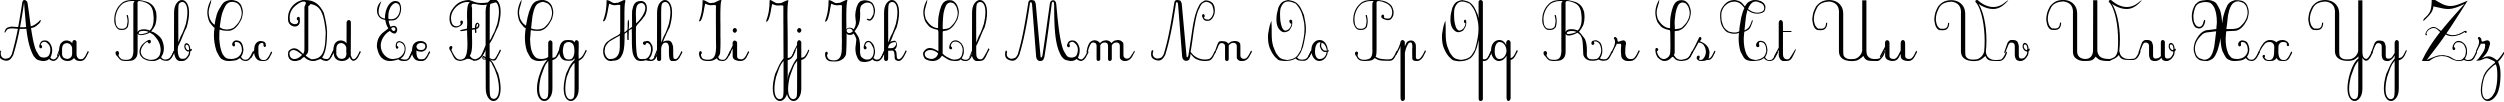 Пример написания английского алфавита шрифтом Plum Script